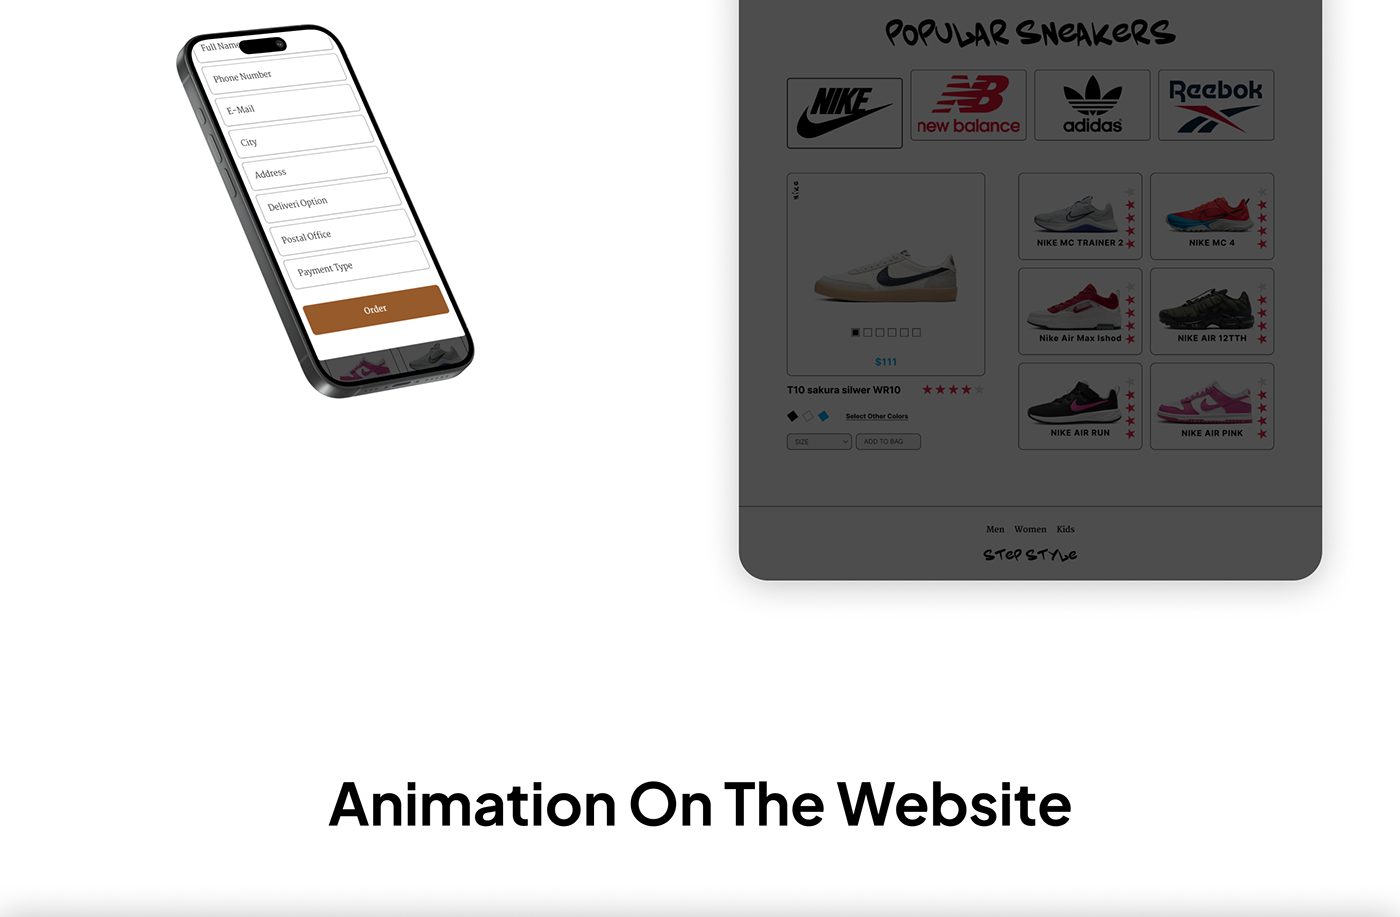 design Website Web Design  Figma ui design UI/UX online store landing page user interface Mobile app